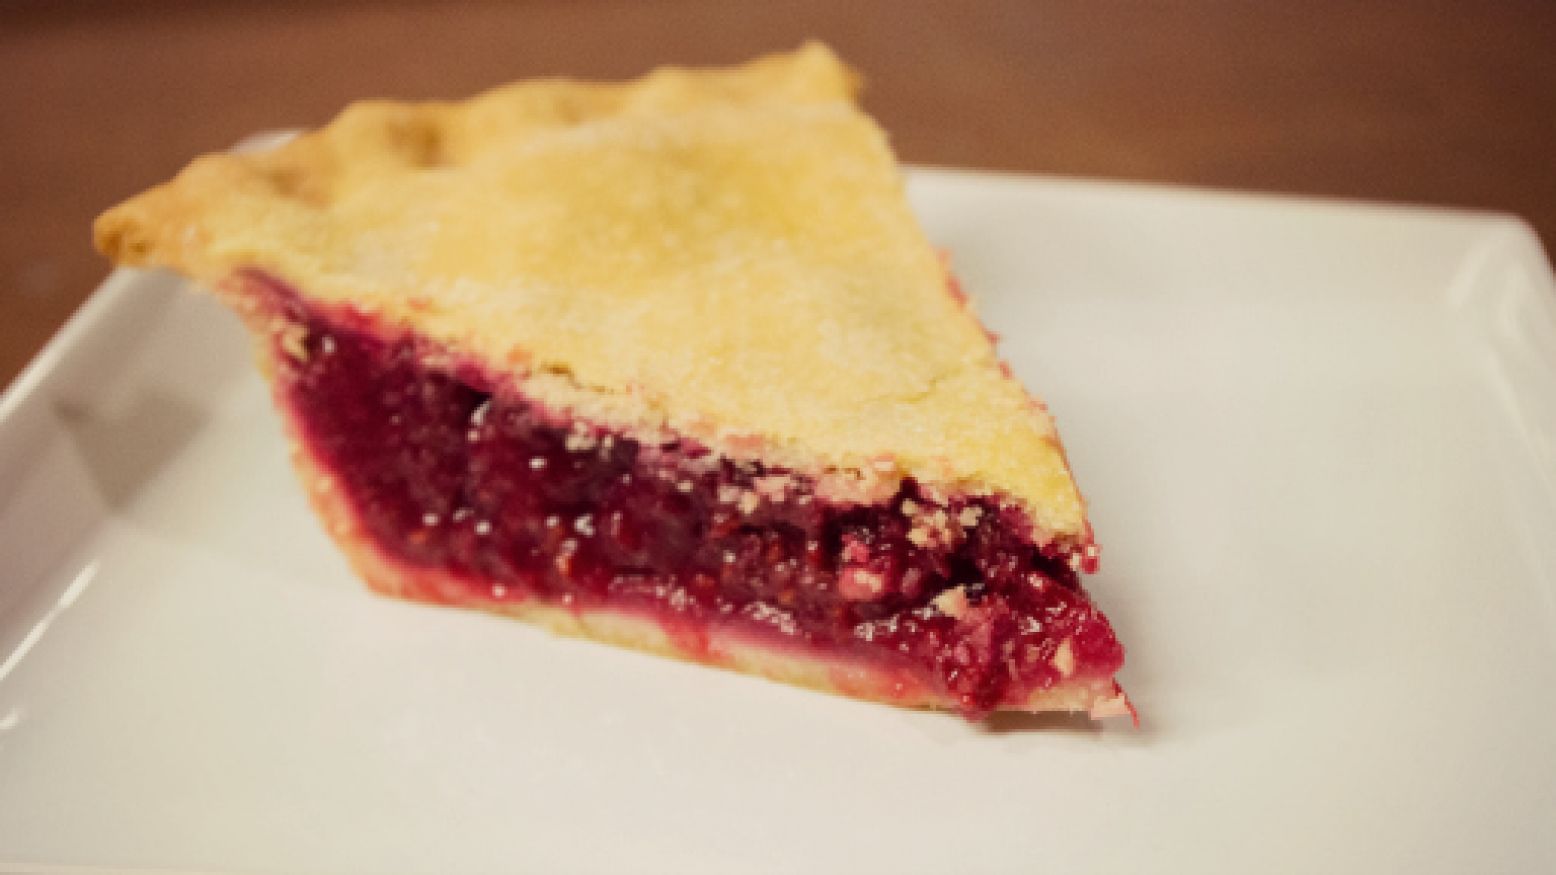 Cran-Raspberry Pie